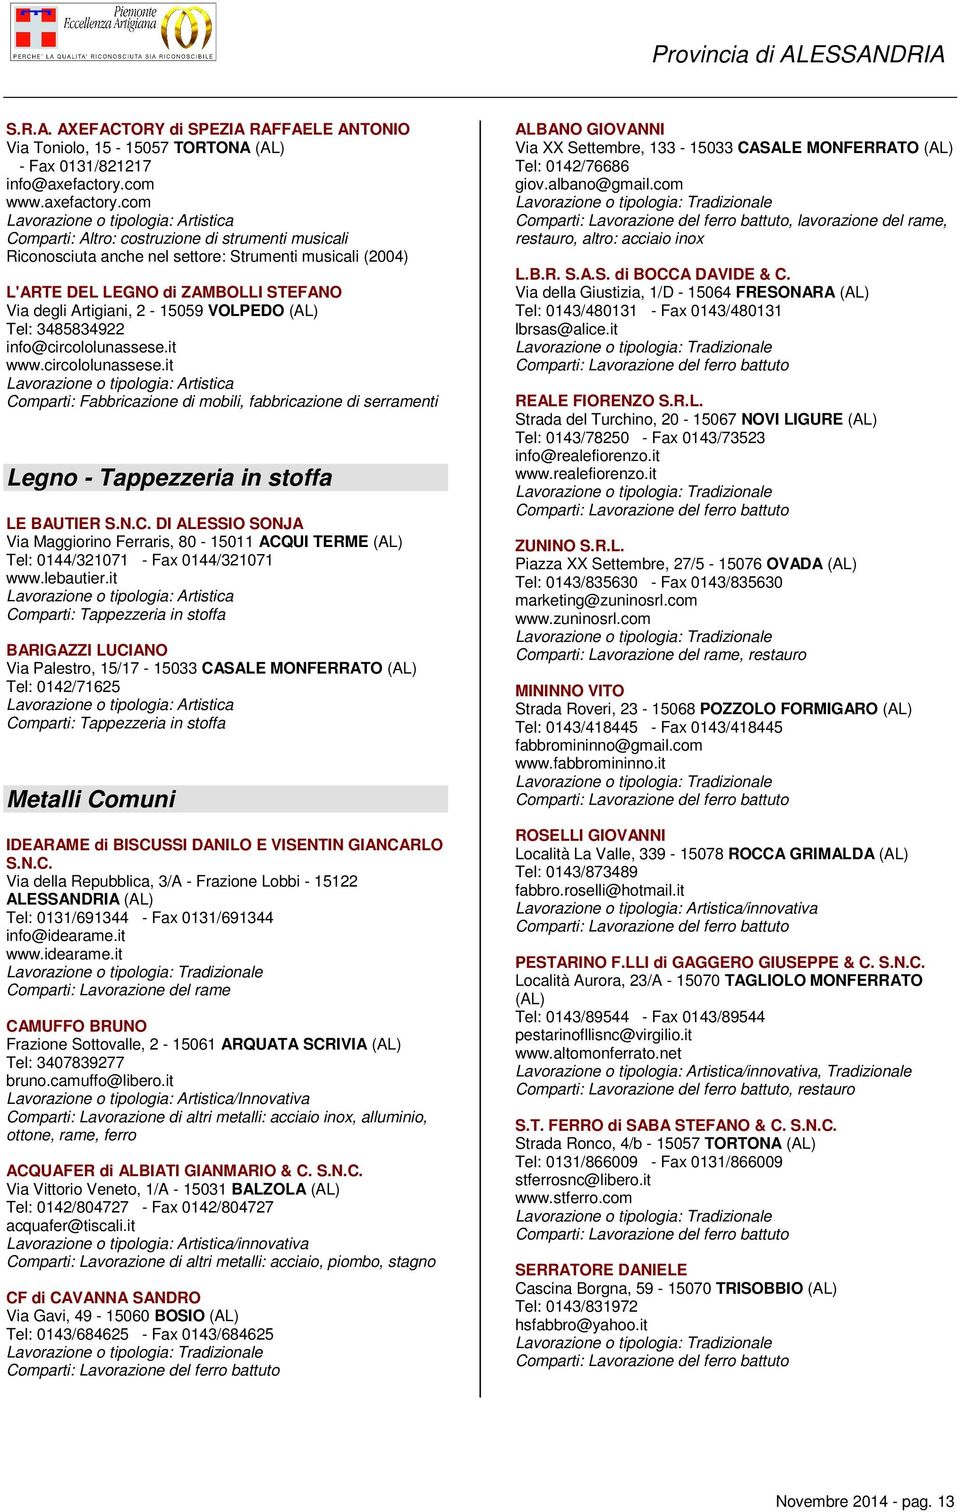 com Comparti: Altro: costruzione di strumenti musicali Riconosciuta anche nel settore: Strumenti musicali (2004) L'ARTE DEL LEGNO di ZAMBOLLI STEFANO Via degli Artigiani, 2-15059 VOLPEDO (AL) Tel: